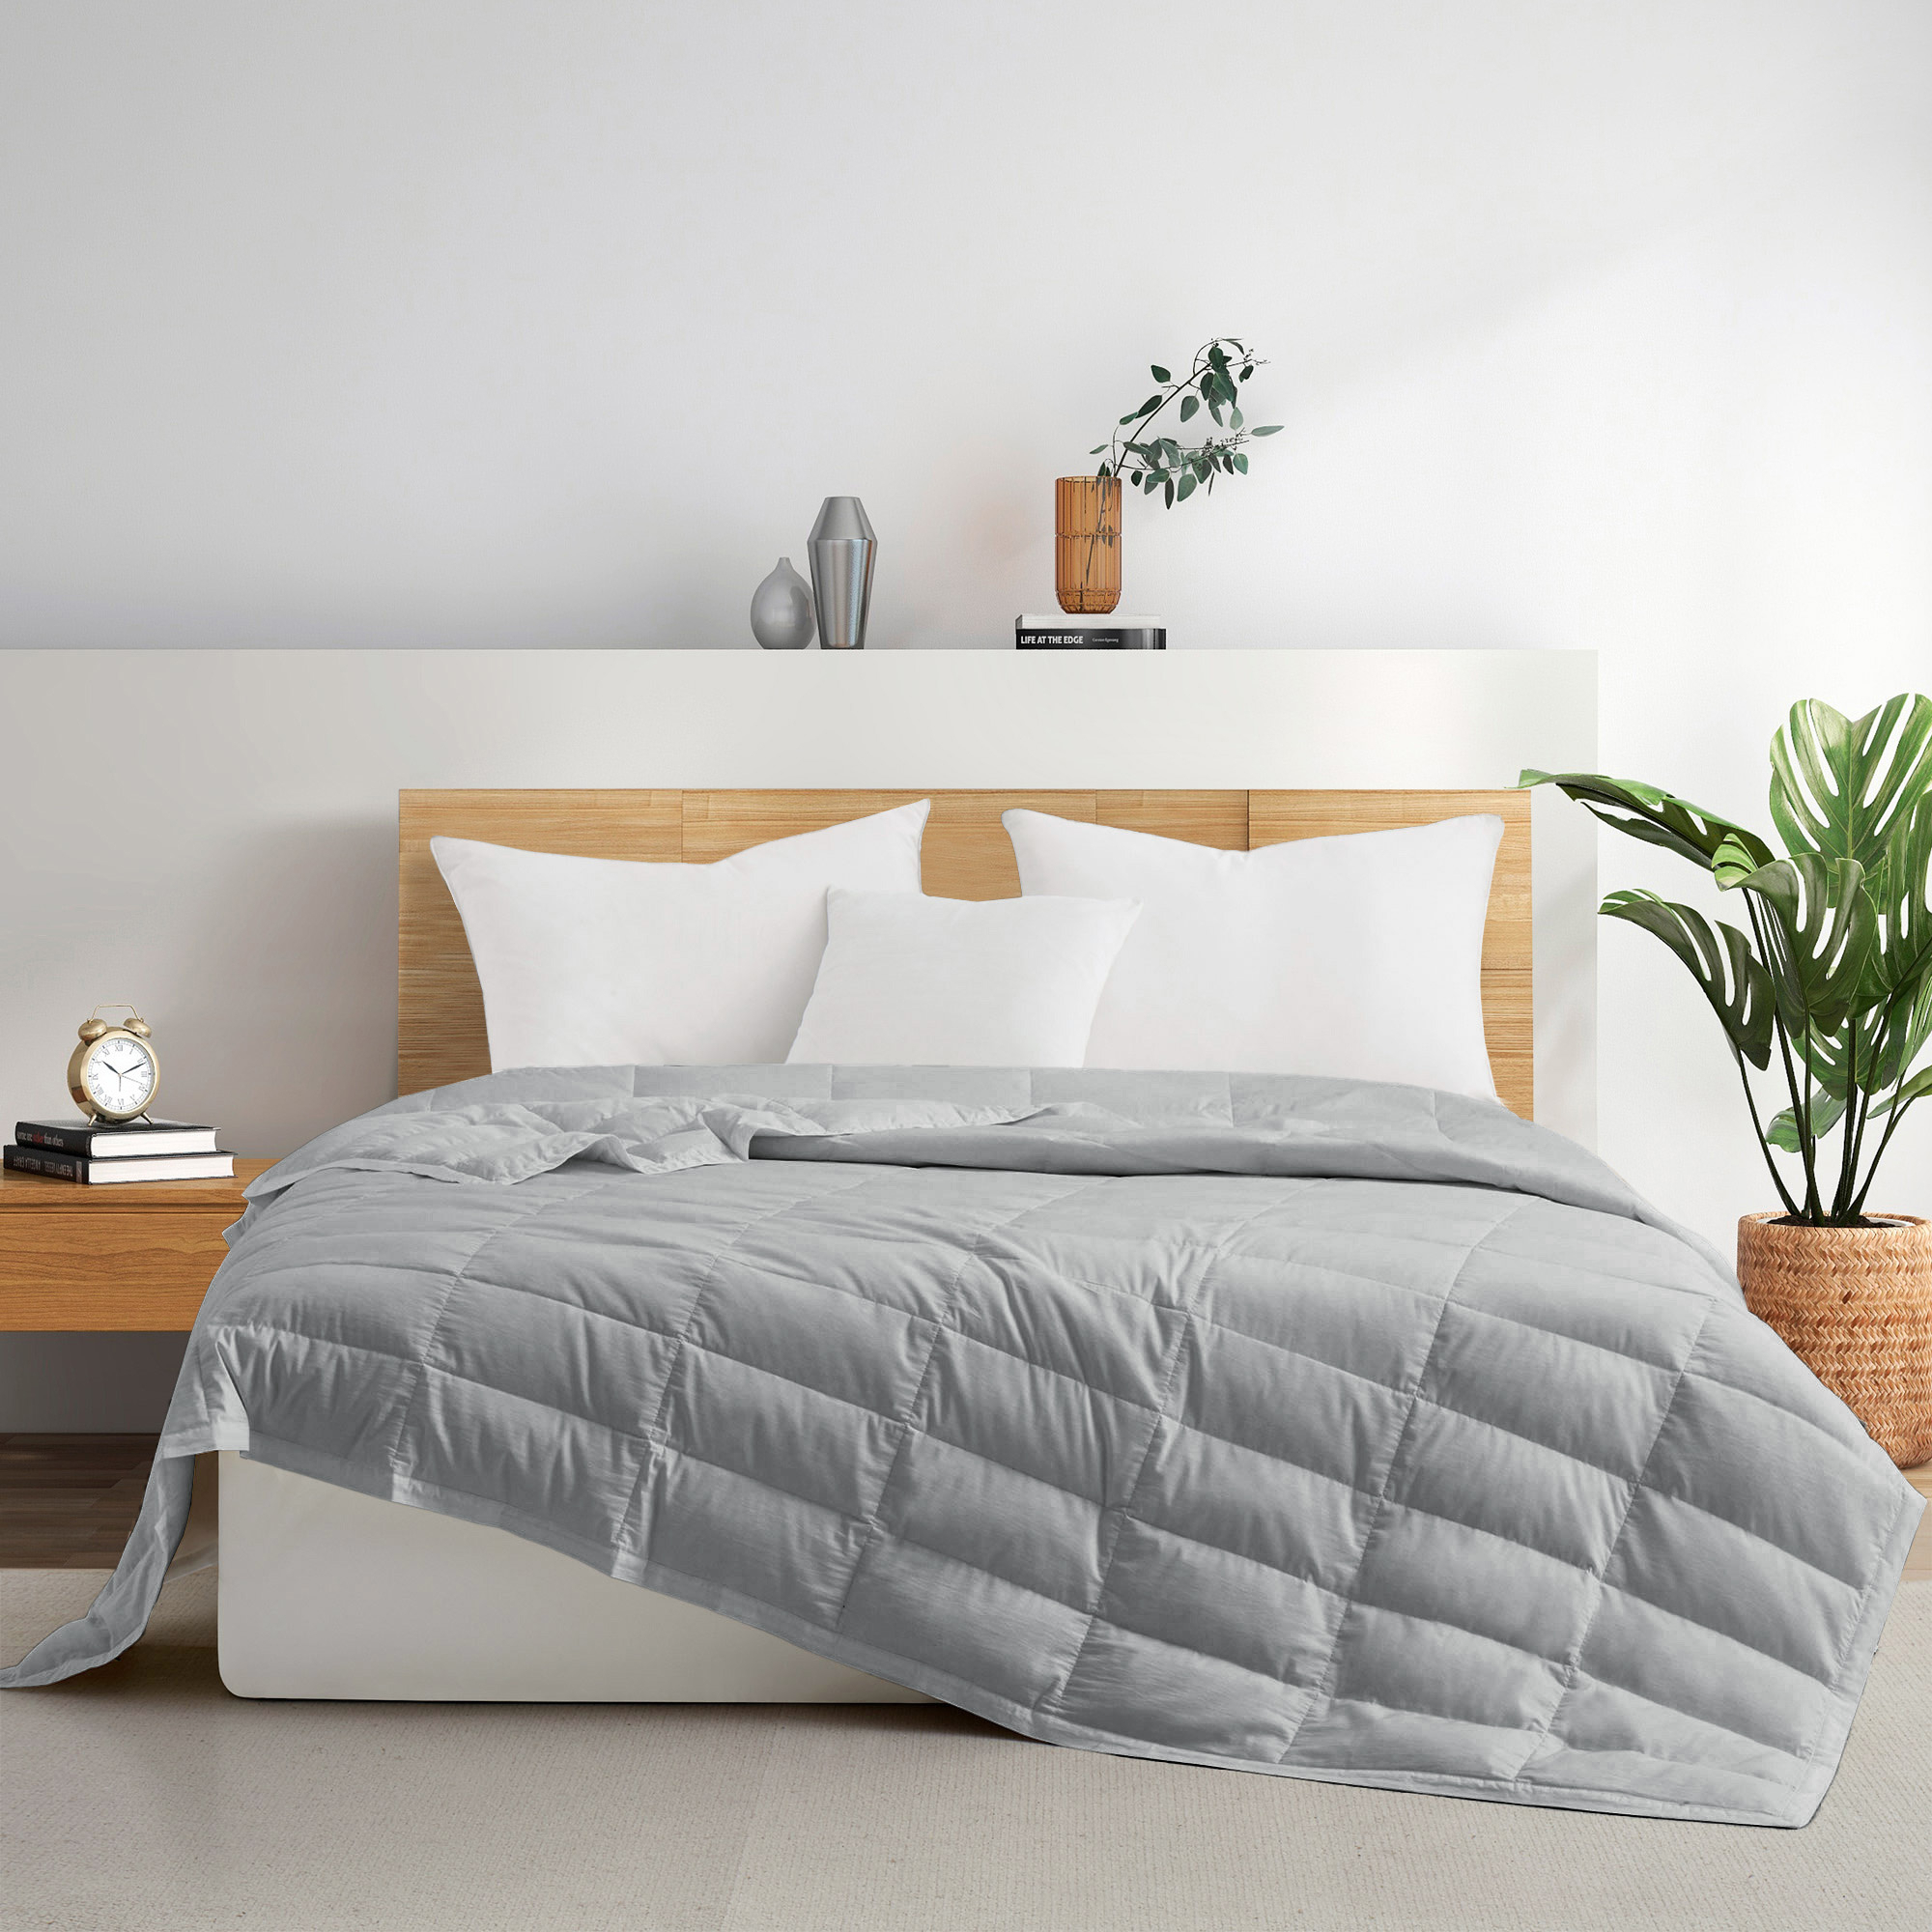 TENCELâ¢ Lyocell Lightweight Cooling Down Blanket-Luxurious Comfort Summer Blanket - Dark Gray, King